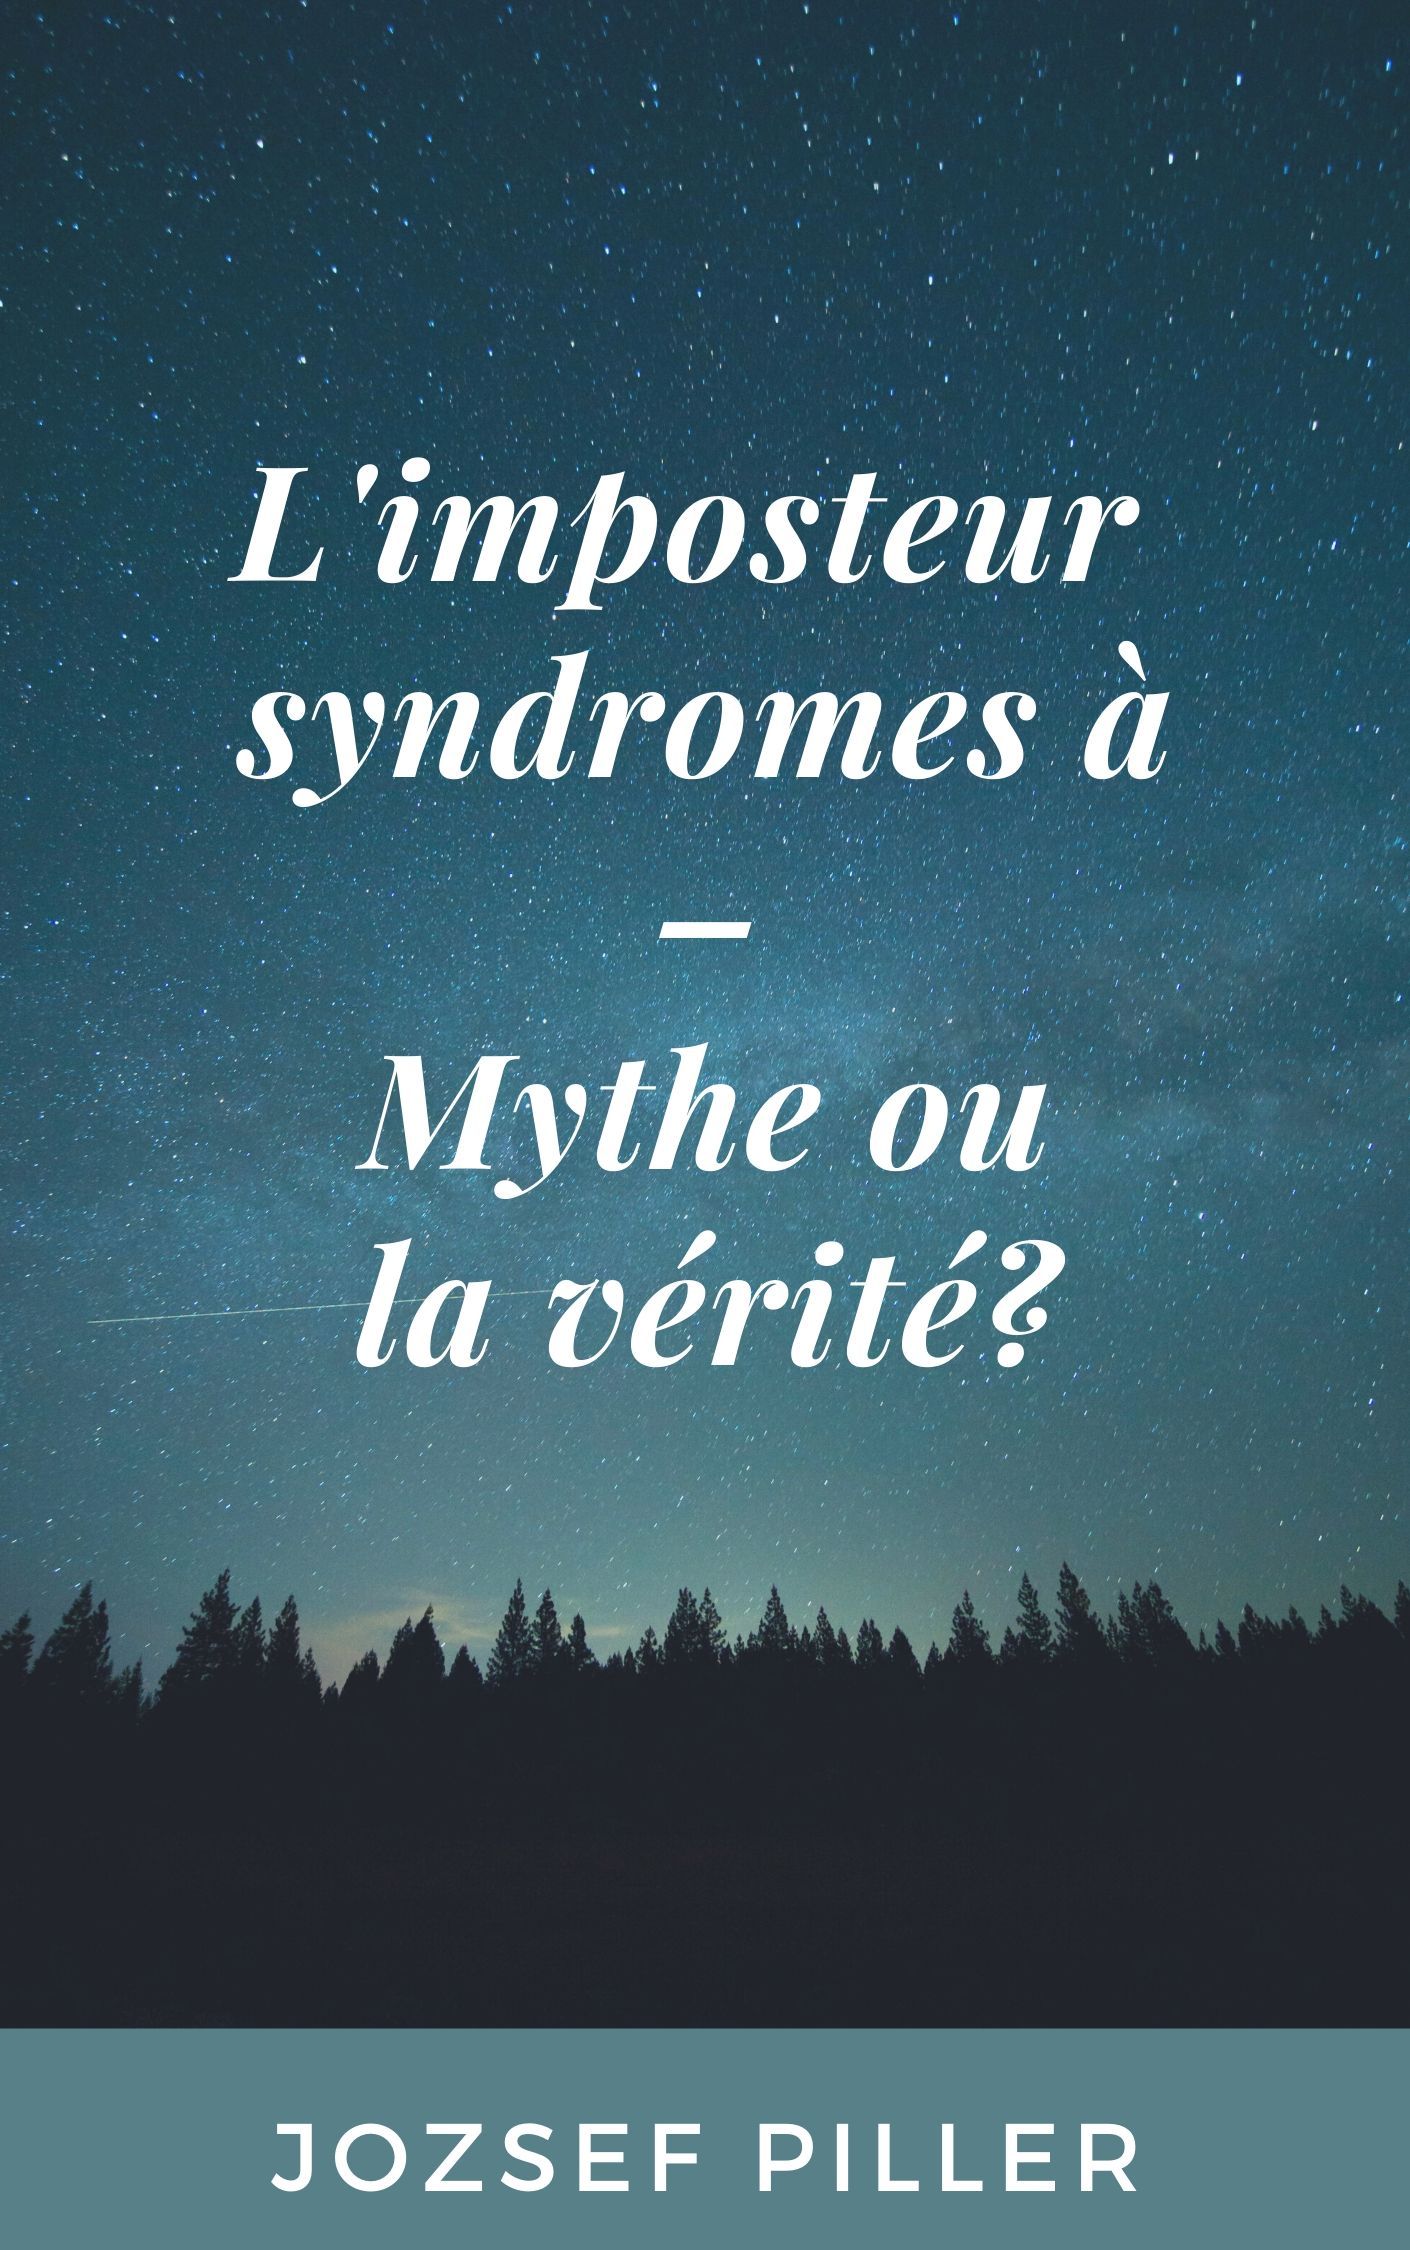 L'imposteur syndromes à - Mythe ou la vérité?, e-bog af Jozsef Piller